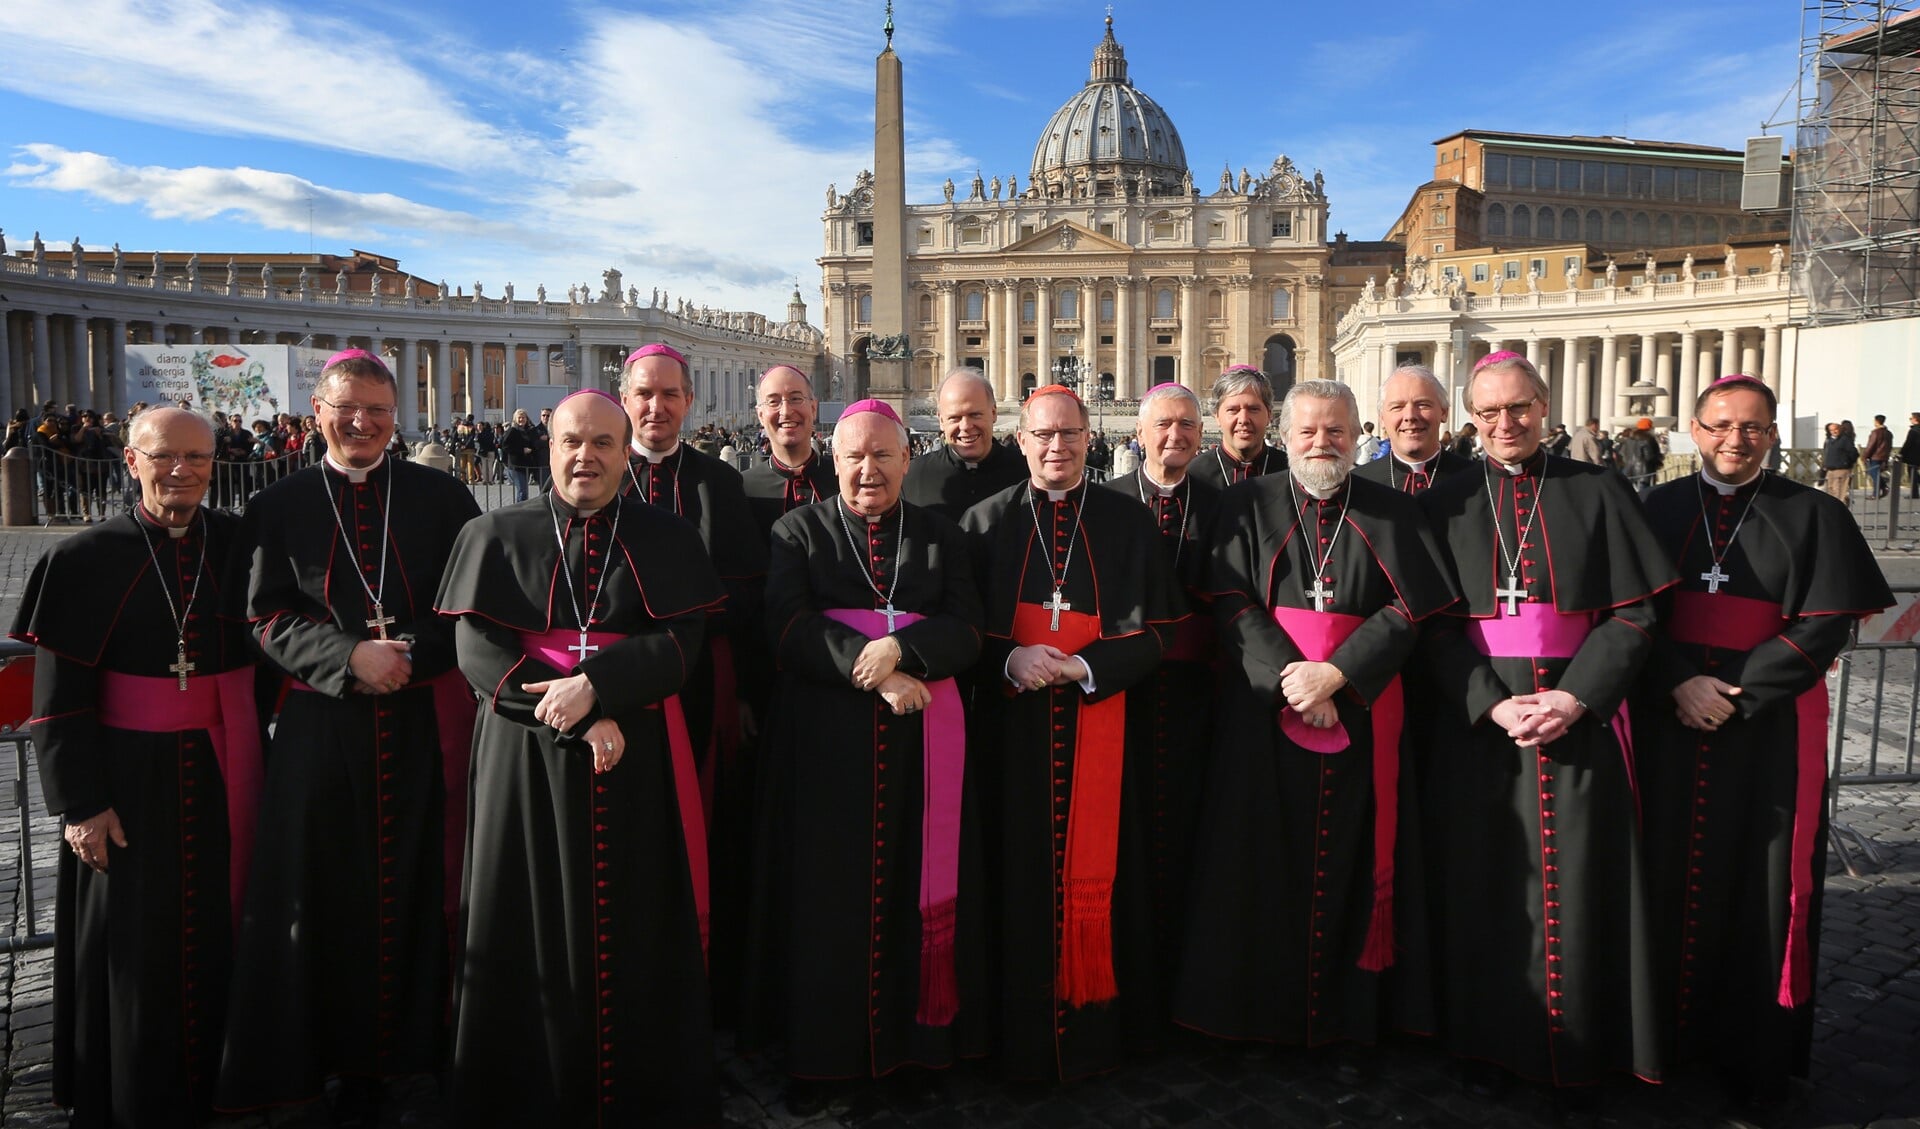 De Nederlandse bisschoppen tijdens hun vorige Ad Liminabezoek in december 2014. Zij waren toen de eerste groep niet-Italiaanse bisschoppen die bij de nieuwe paus Franciscus op bezoek mochten.